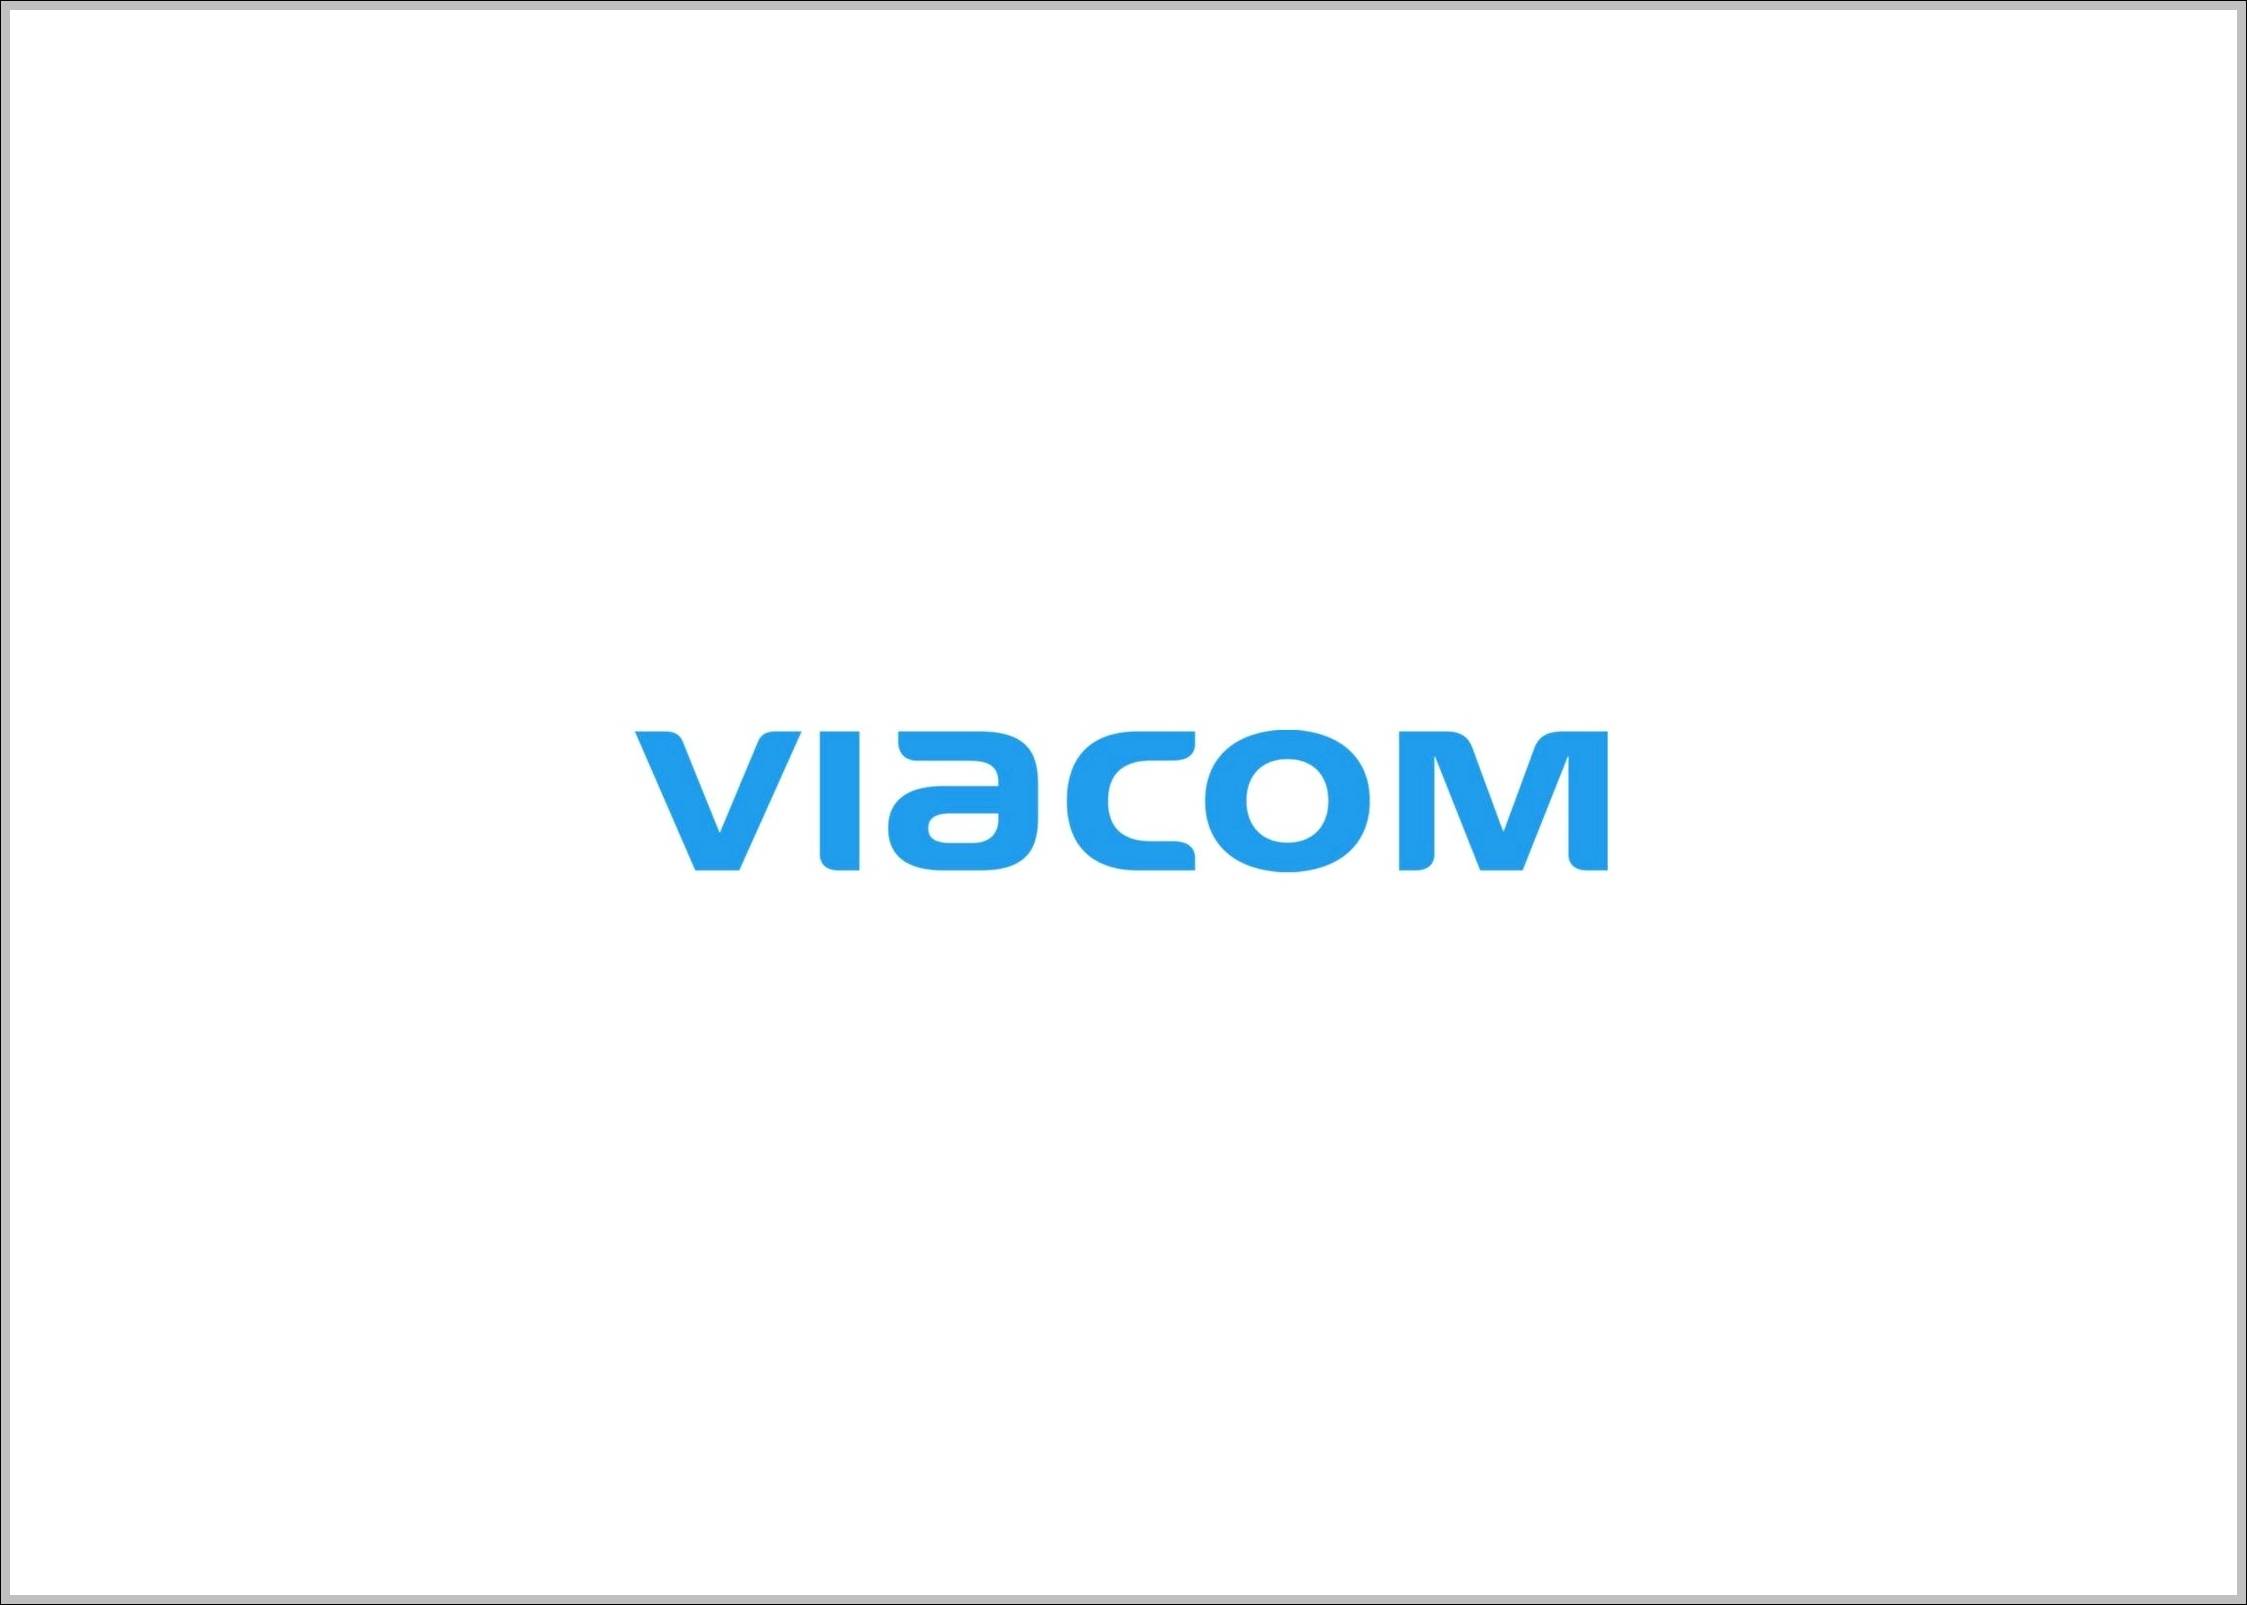 Viacom Blue logo 2011